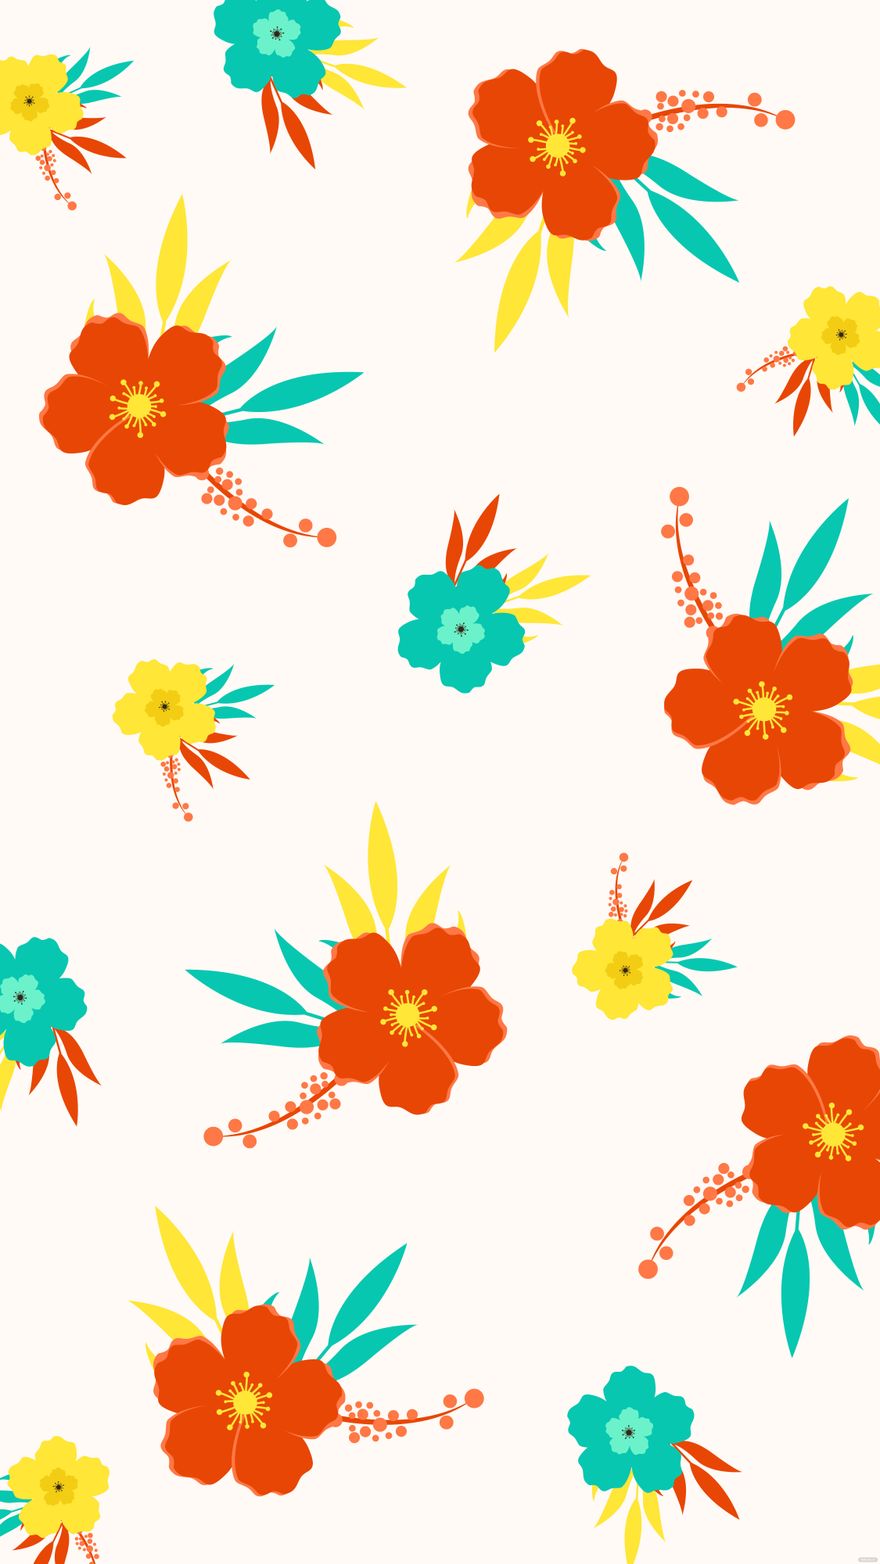 Free Colorful Summer Floral Background in Illustrator, EPS, SVG, JPG